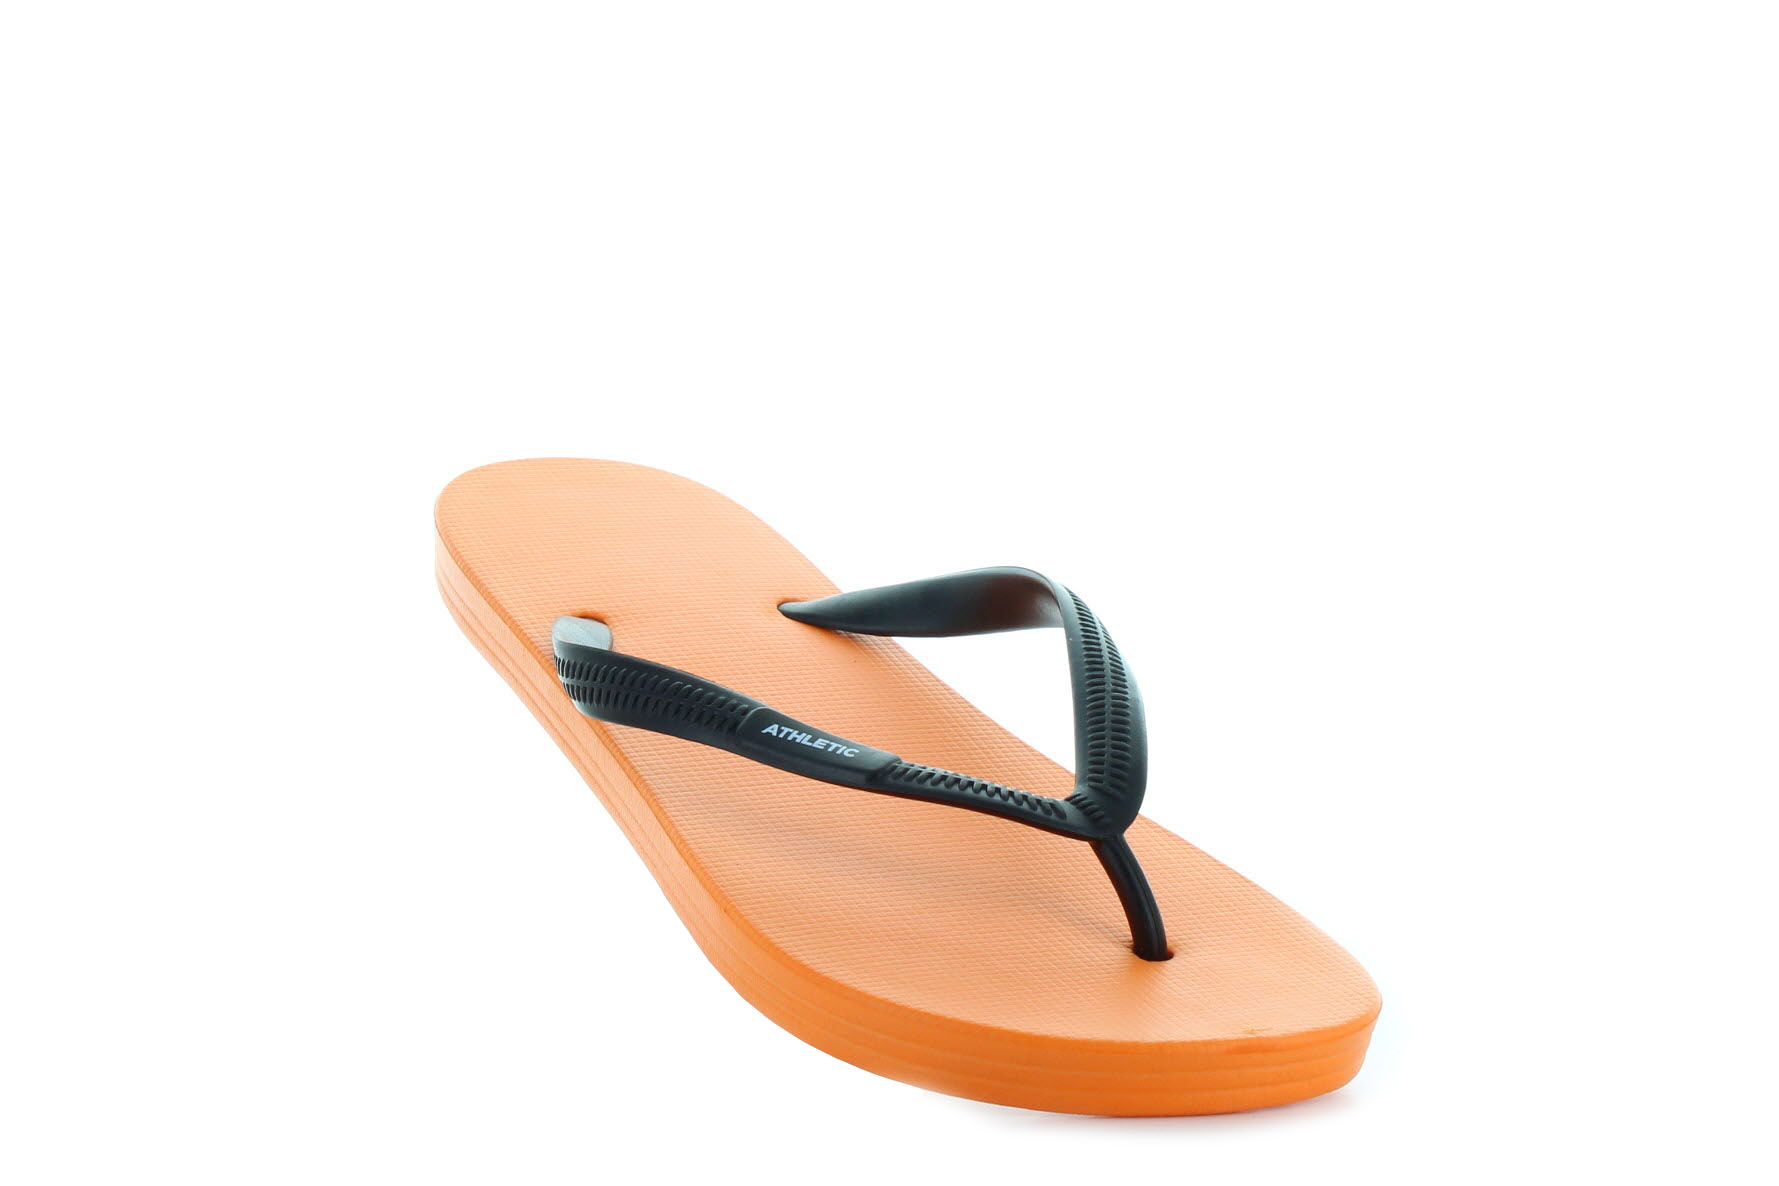 Athletic orange men's sandals